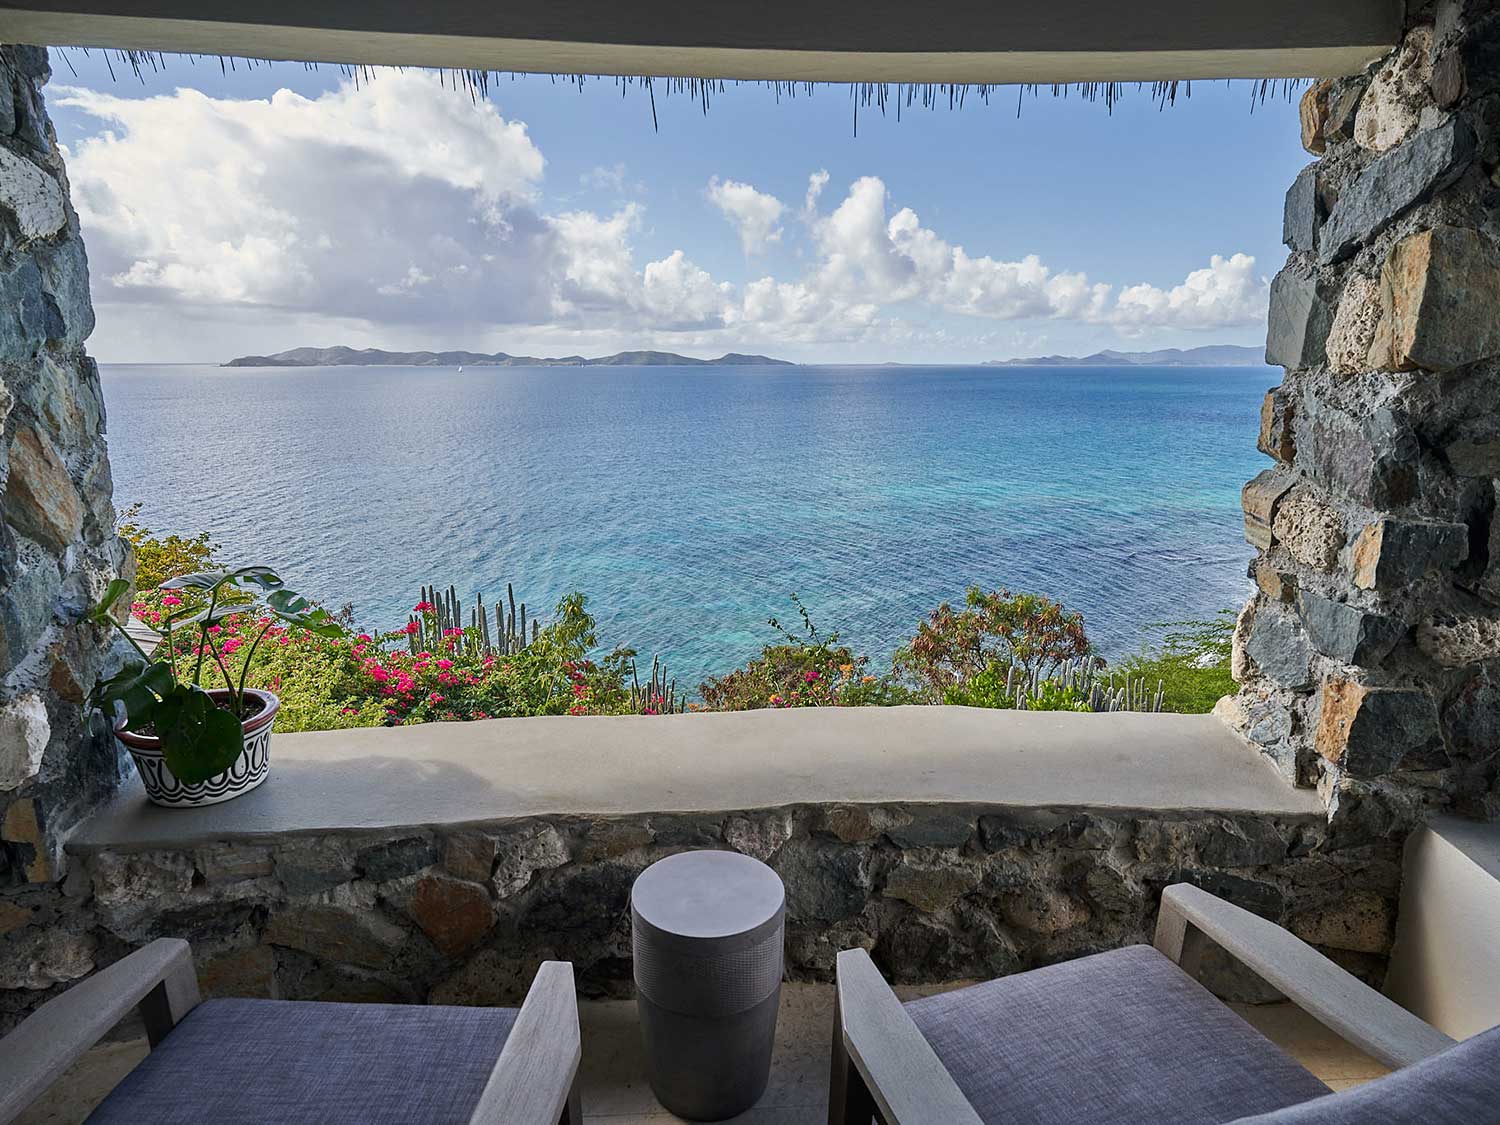 A resort window view overlooking the ocean of the British Virgin Islands.